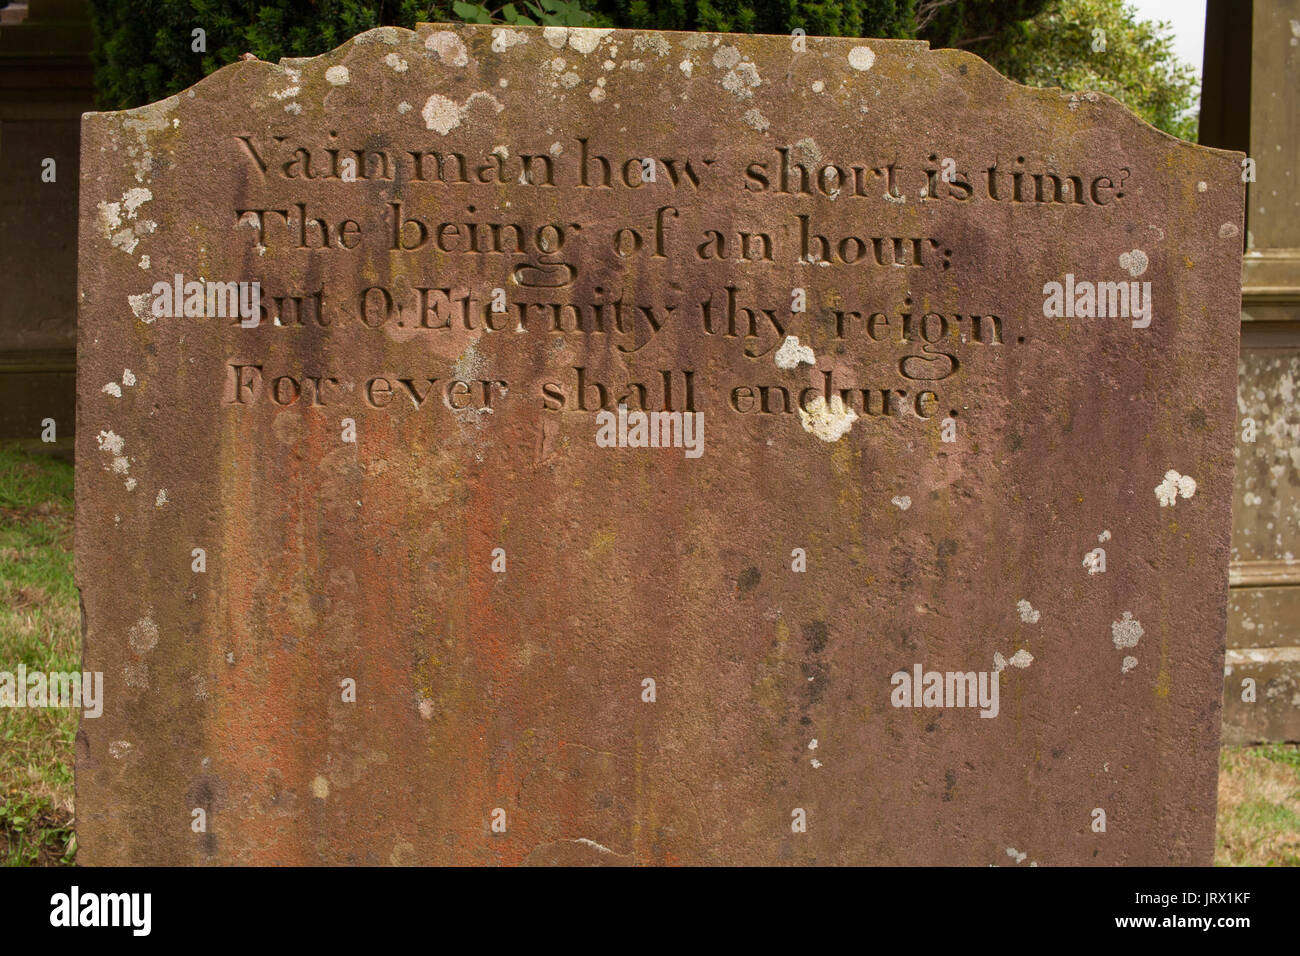 'Homme' en vain pierre tombale kirkoswald Ayrshire, Ecosse, église Grande-Bretagne Banque D'Images